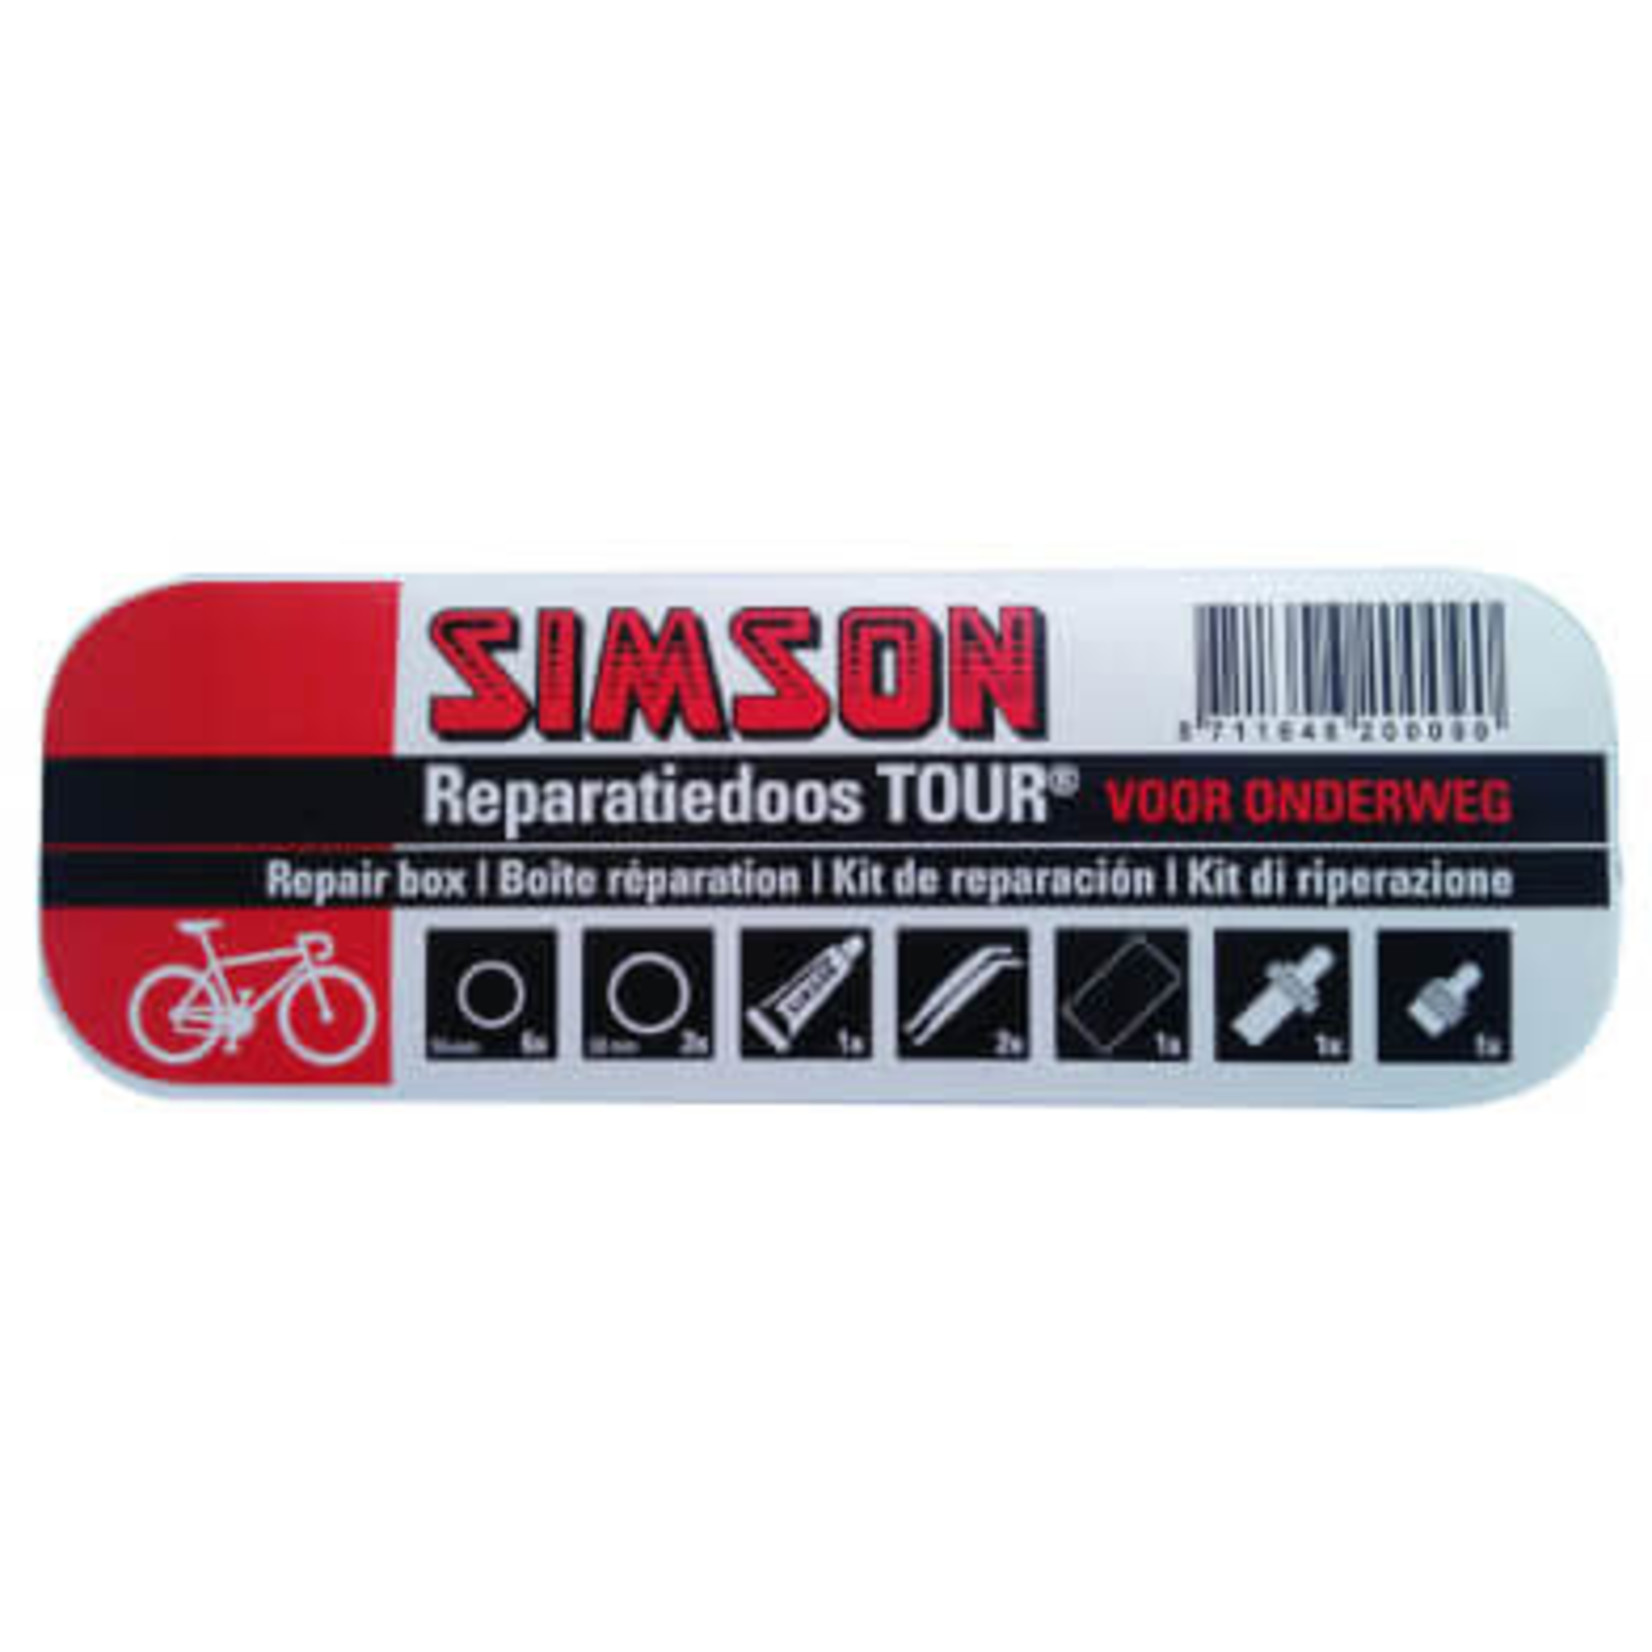 Simson Reparatiedoos Tour met clip